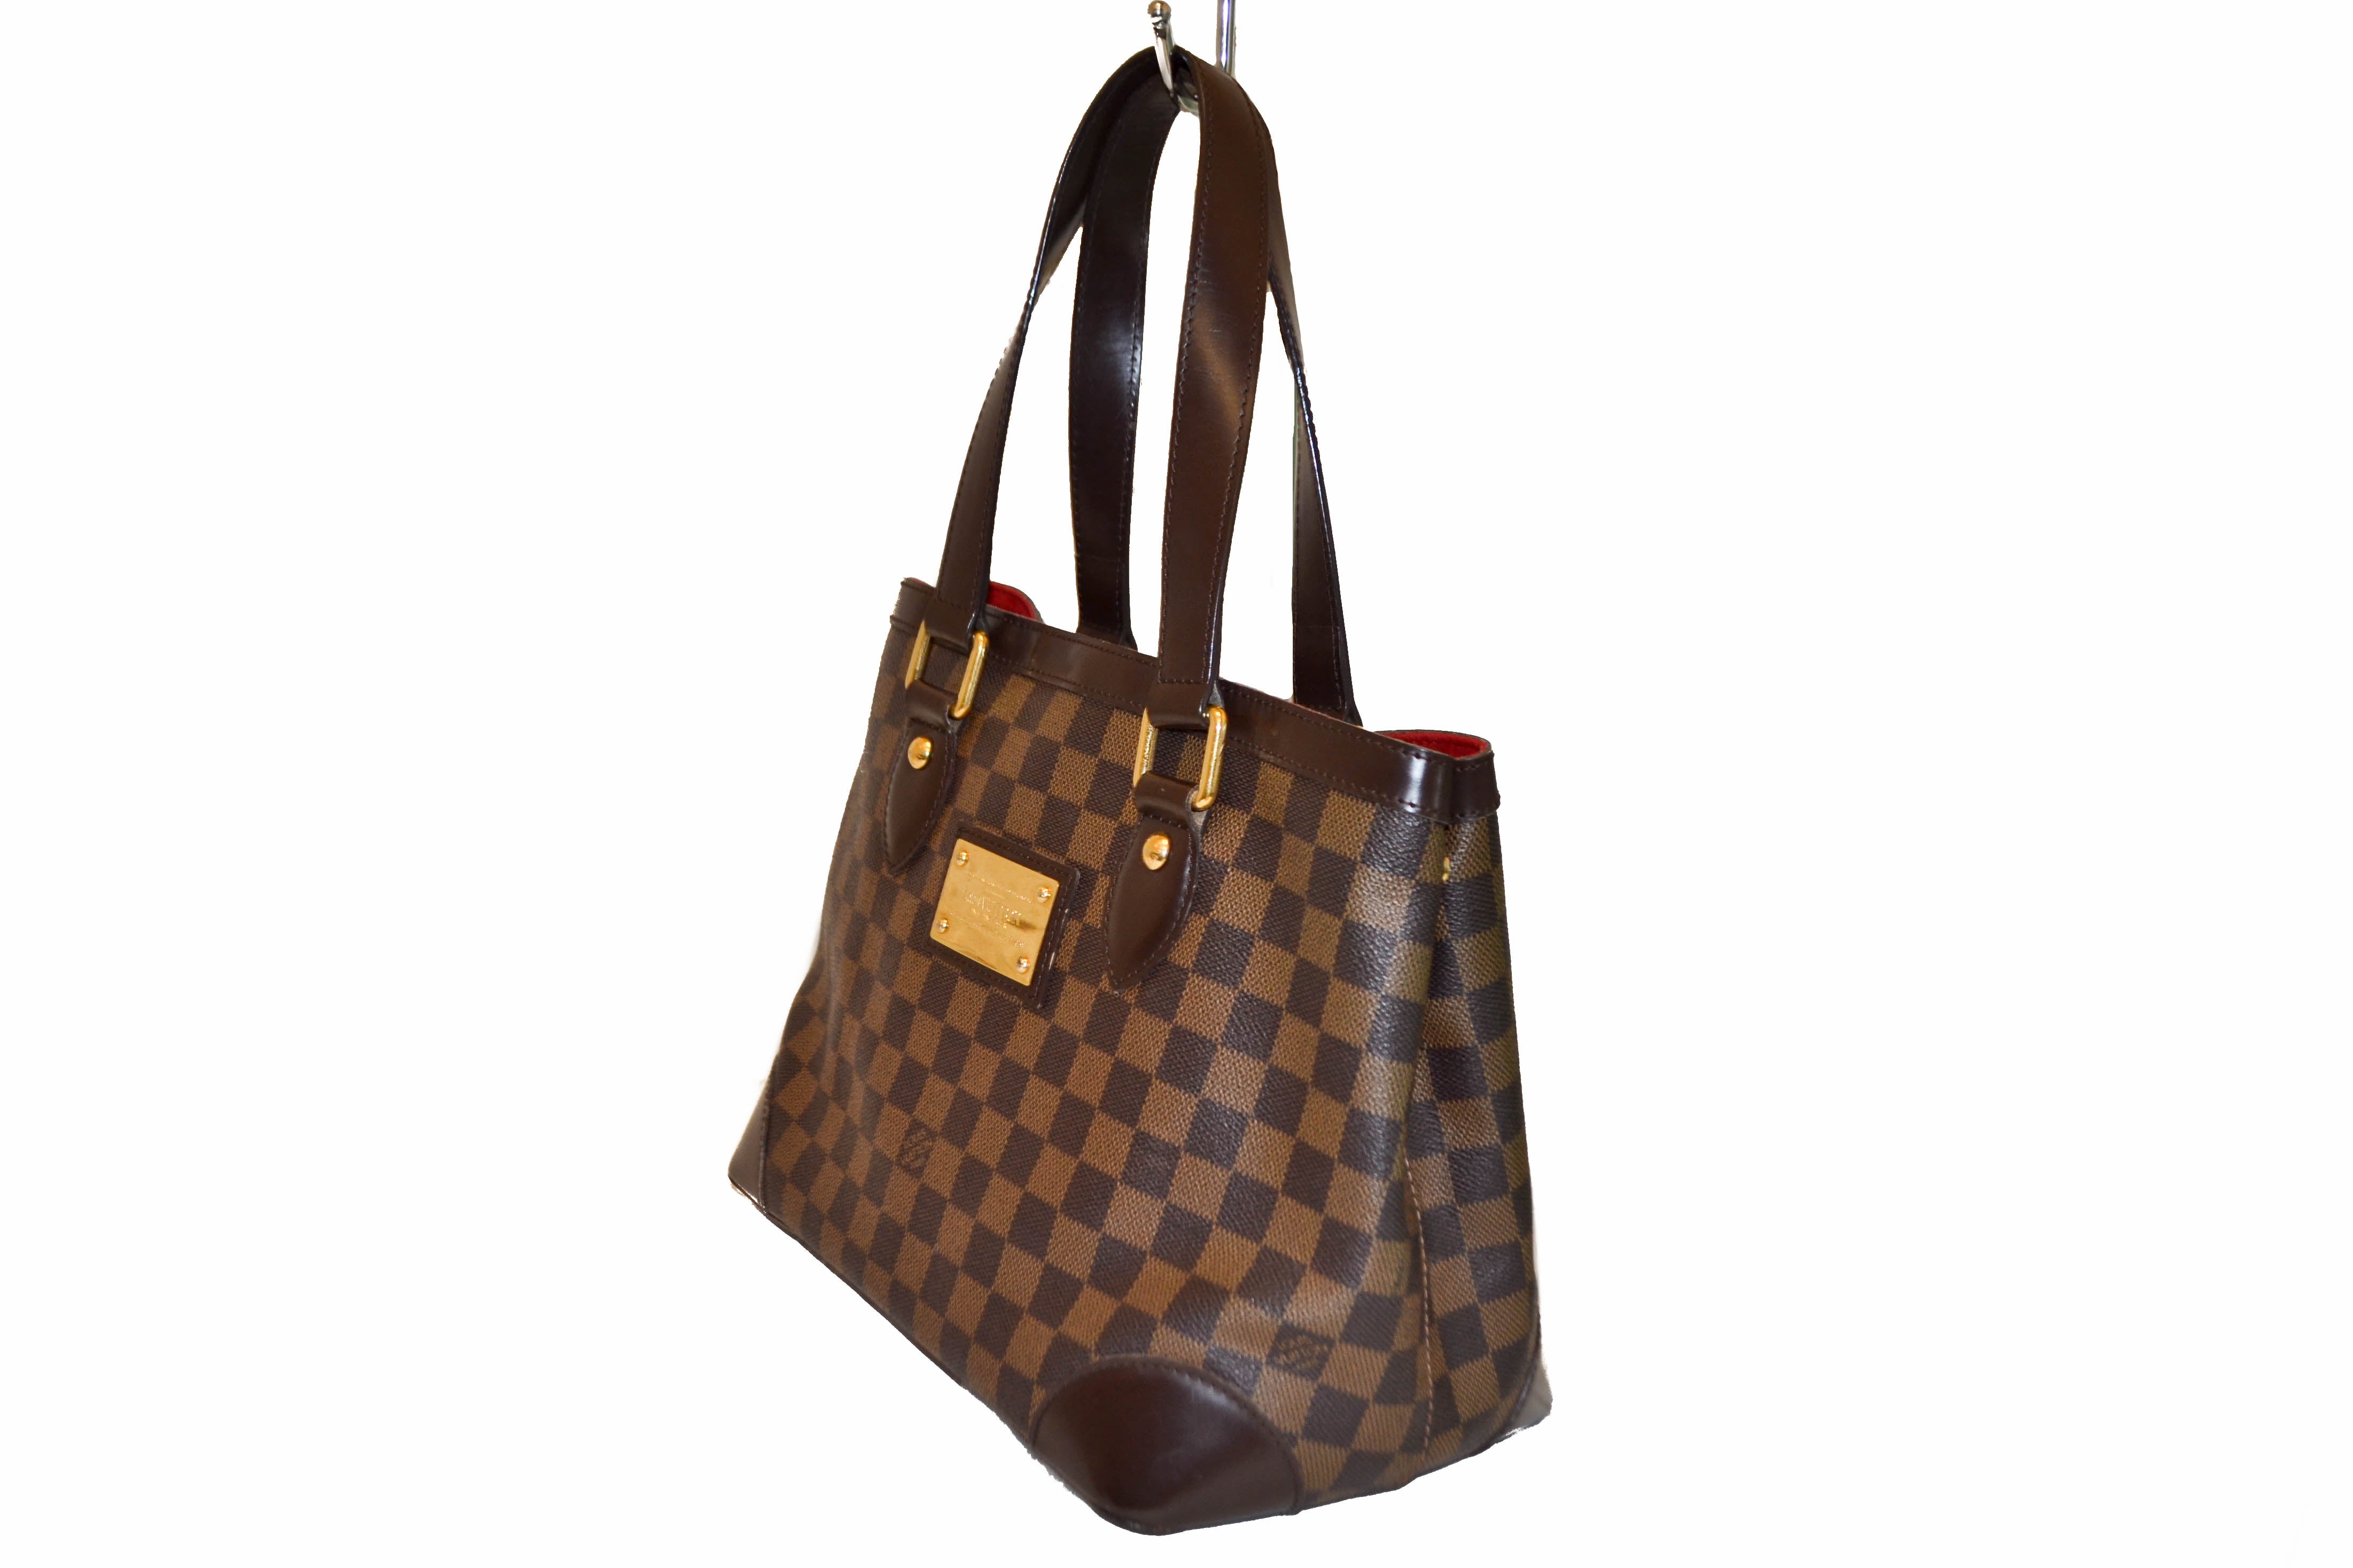 Authentic Louis Vuitton Damier Ebene Hampstead PM Handbag – Paris Station Shop